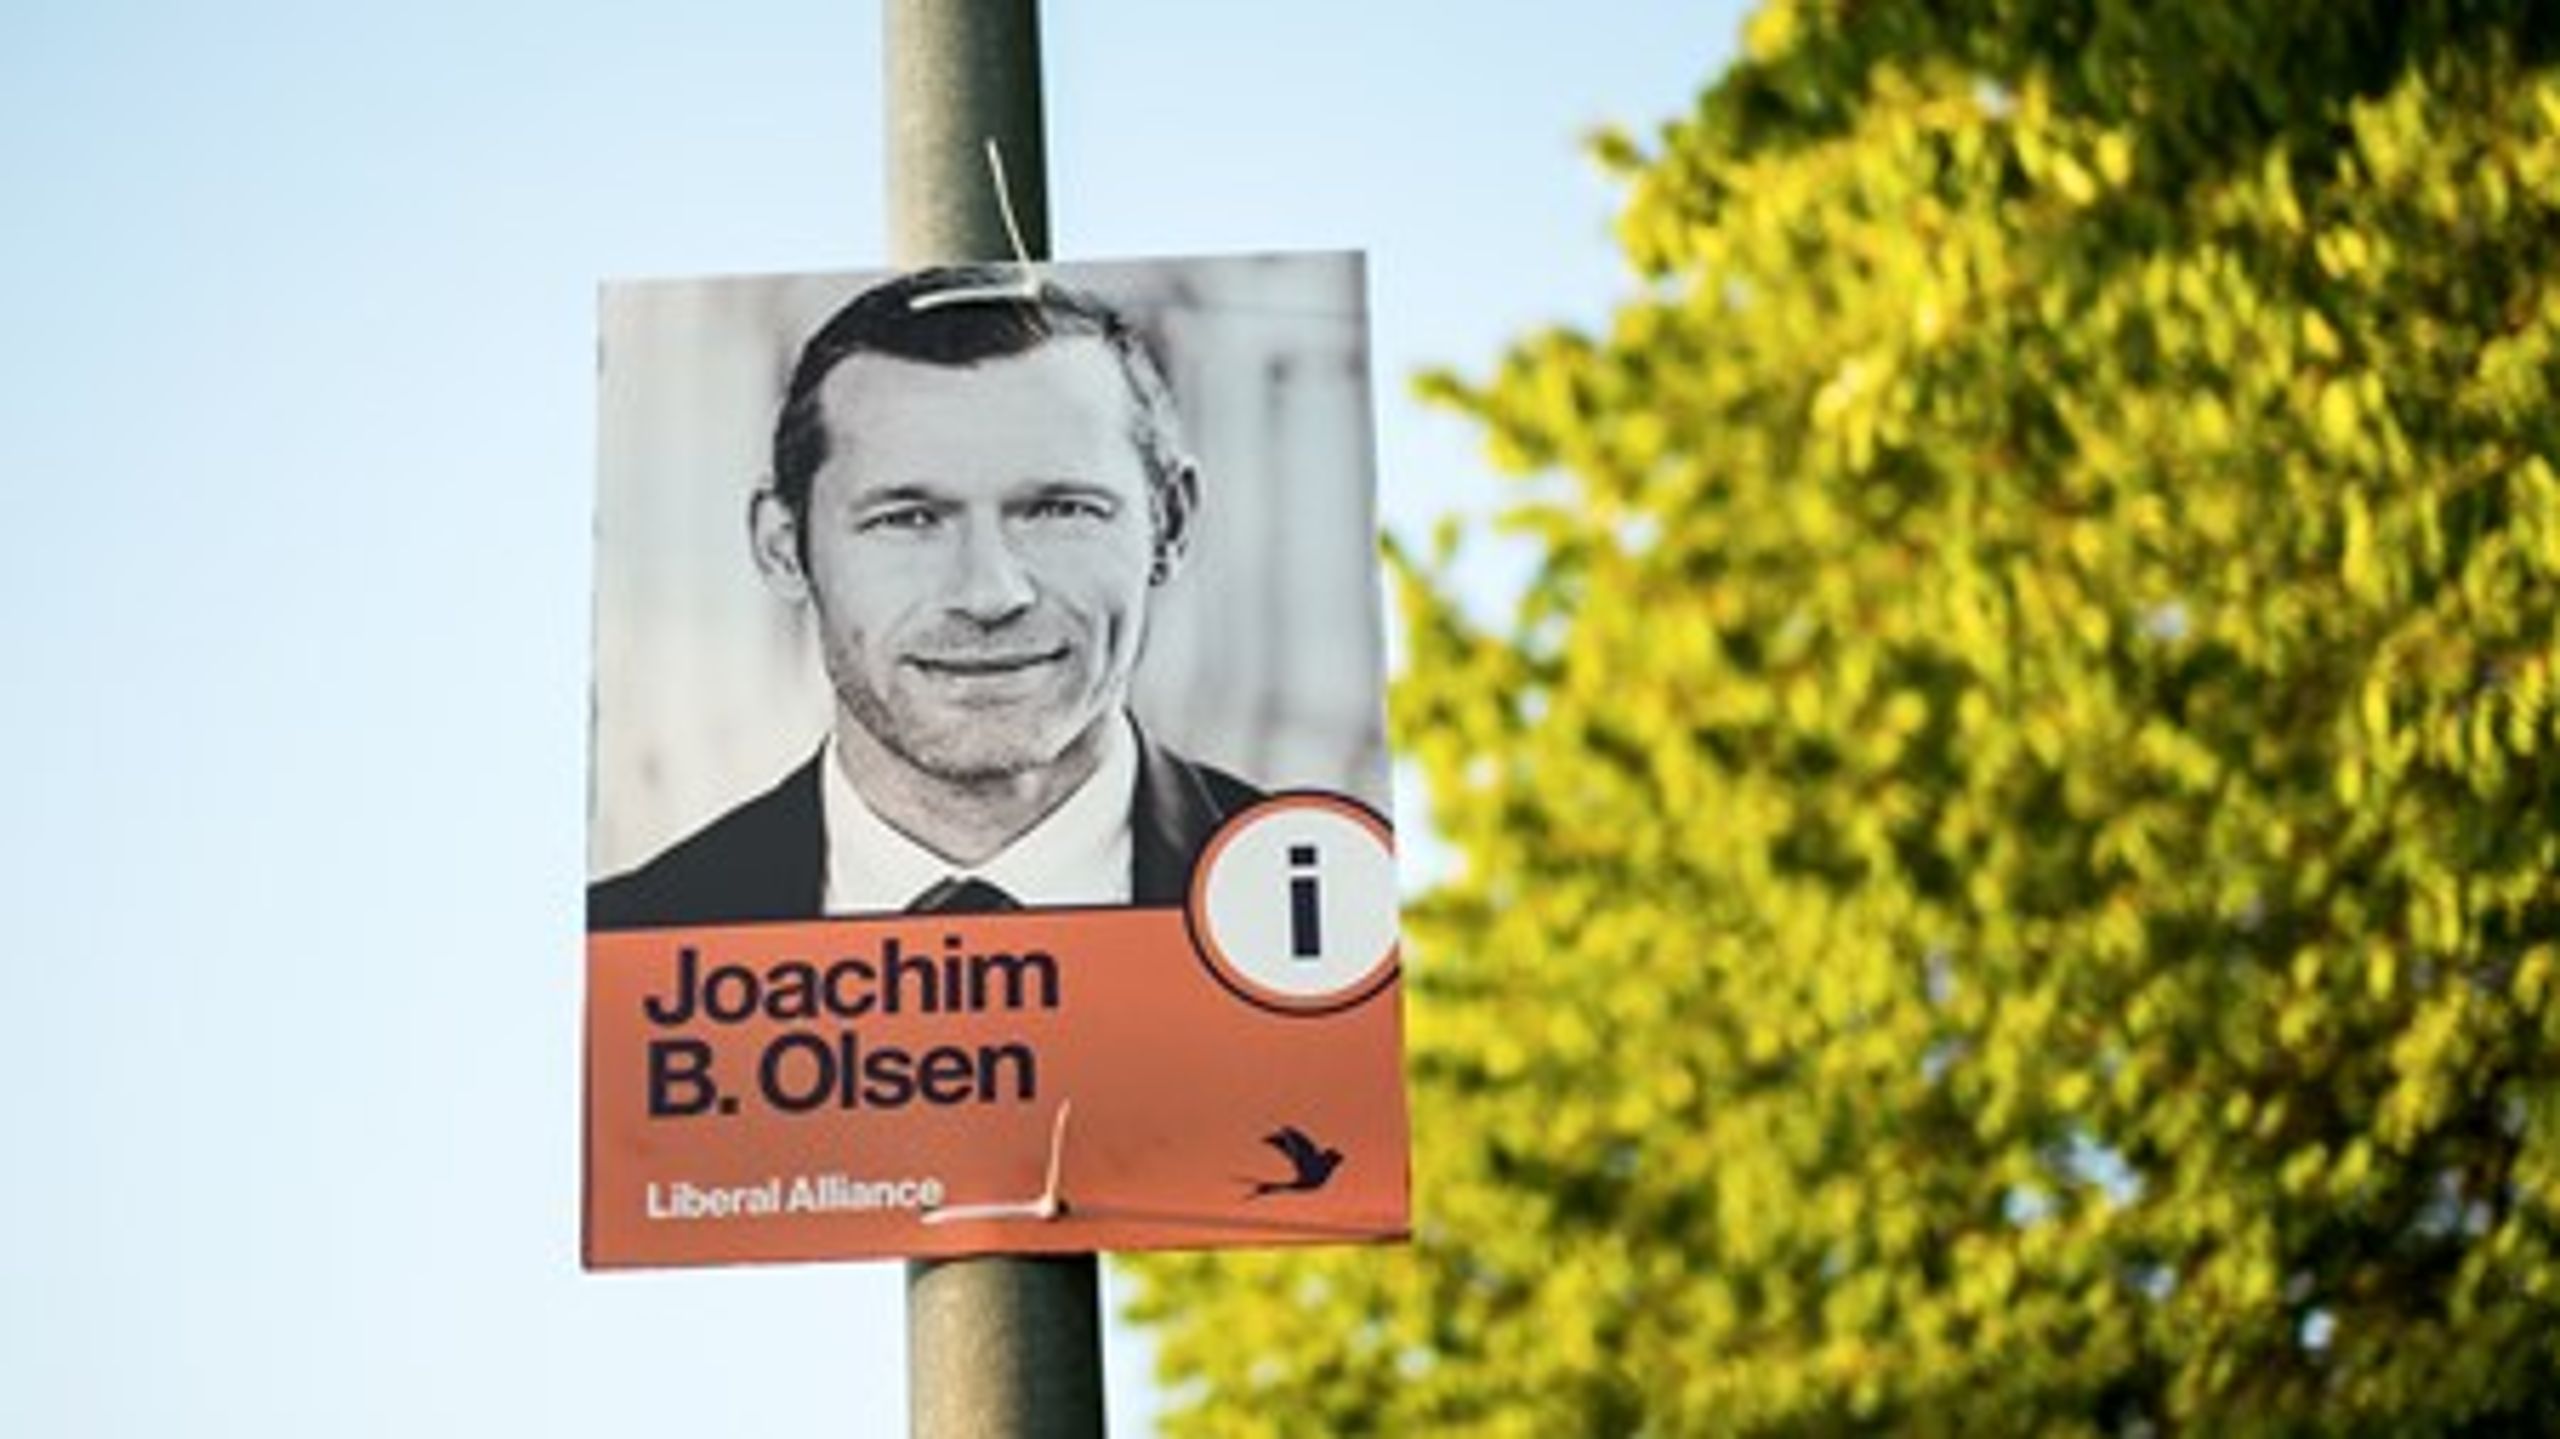 Liberal Alliances arbejdsmarkedsordfører, Joachim B. Olsen, mere end fordoblede sit personlige stemmetal ved dette Folketingsvalg sammenlignet med 2011.